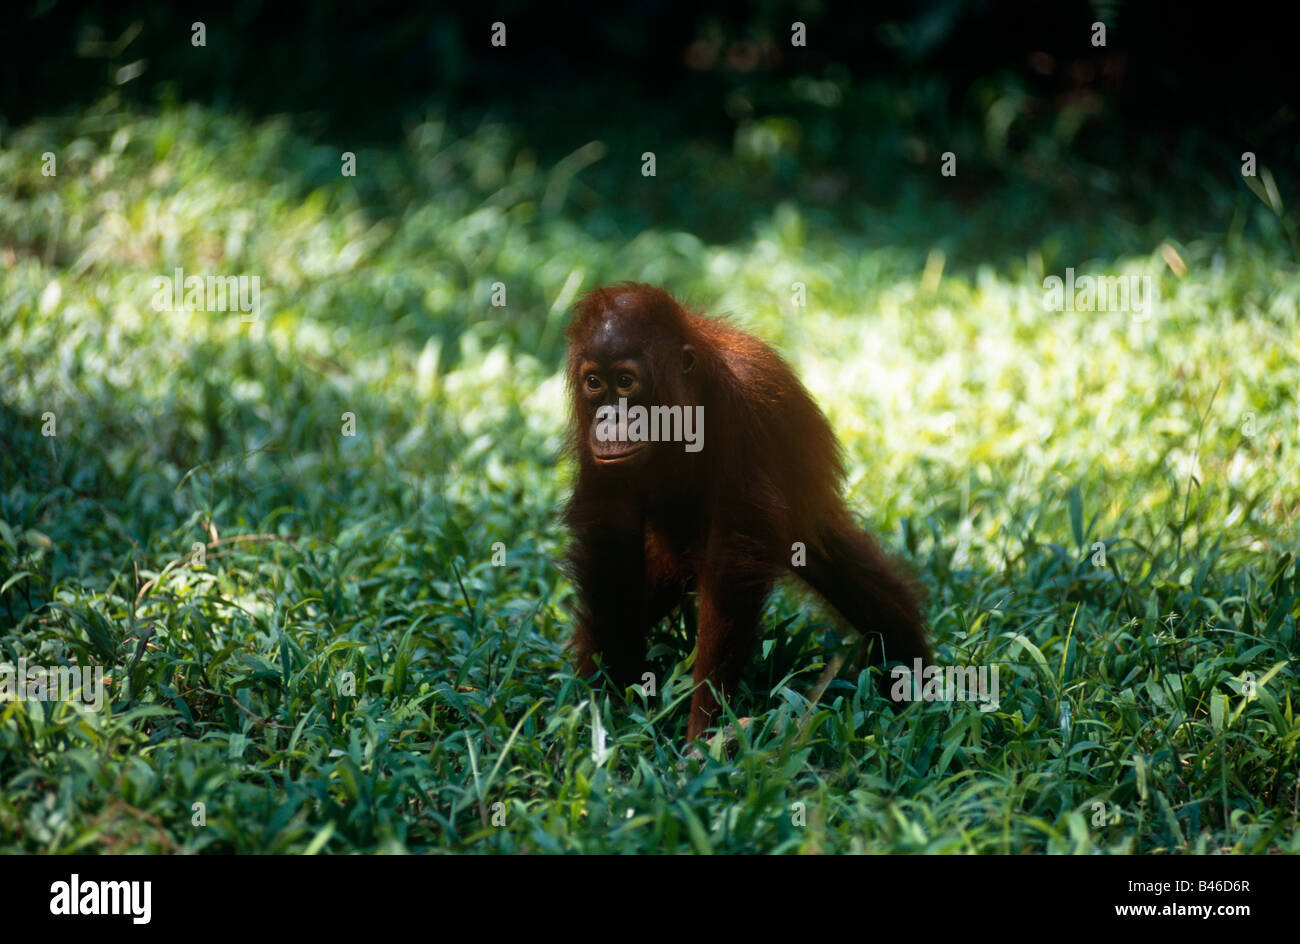 Baby Orangutan (Pongo pygmaeus), Camp Leakey, Tanjung Puting National Park, West Kotawaringin Regency, Kalimantan, Indonesia Stock Photo